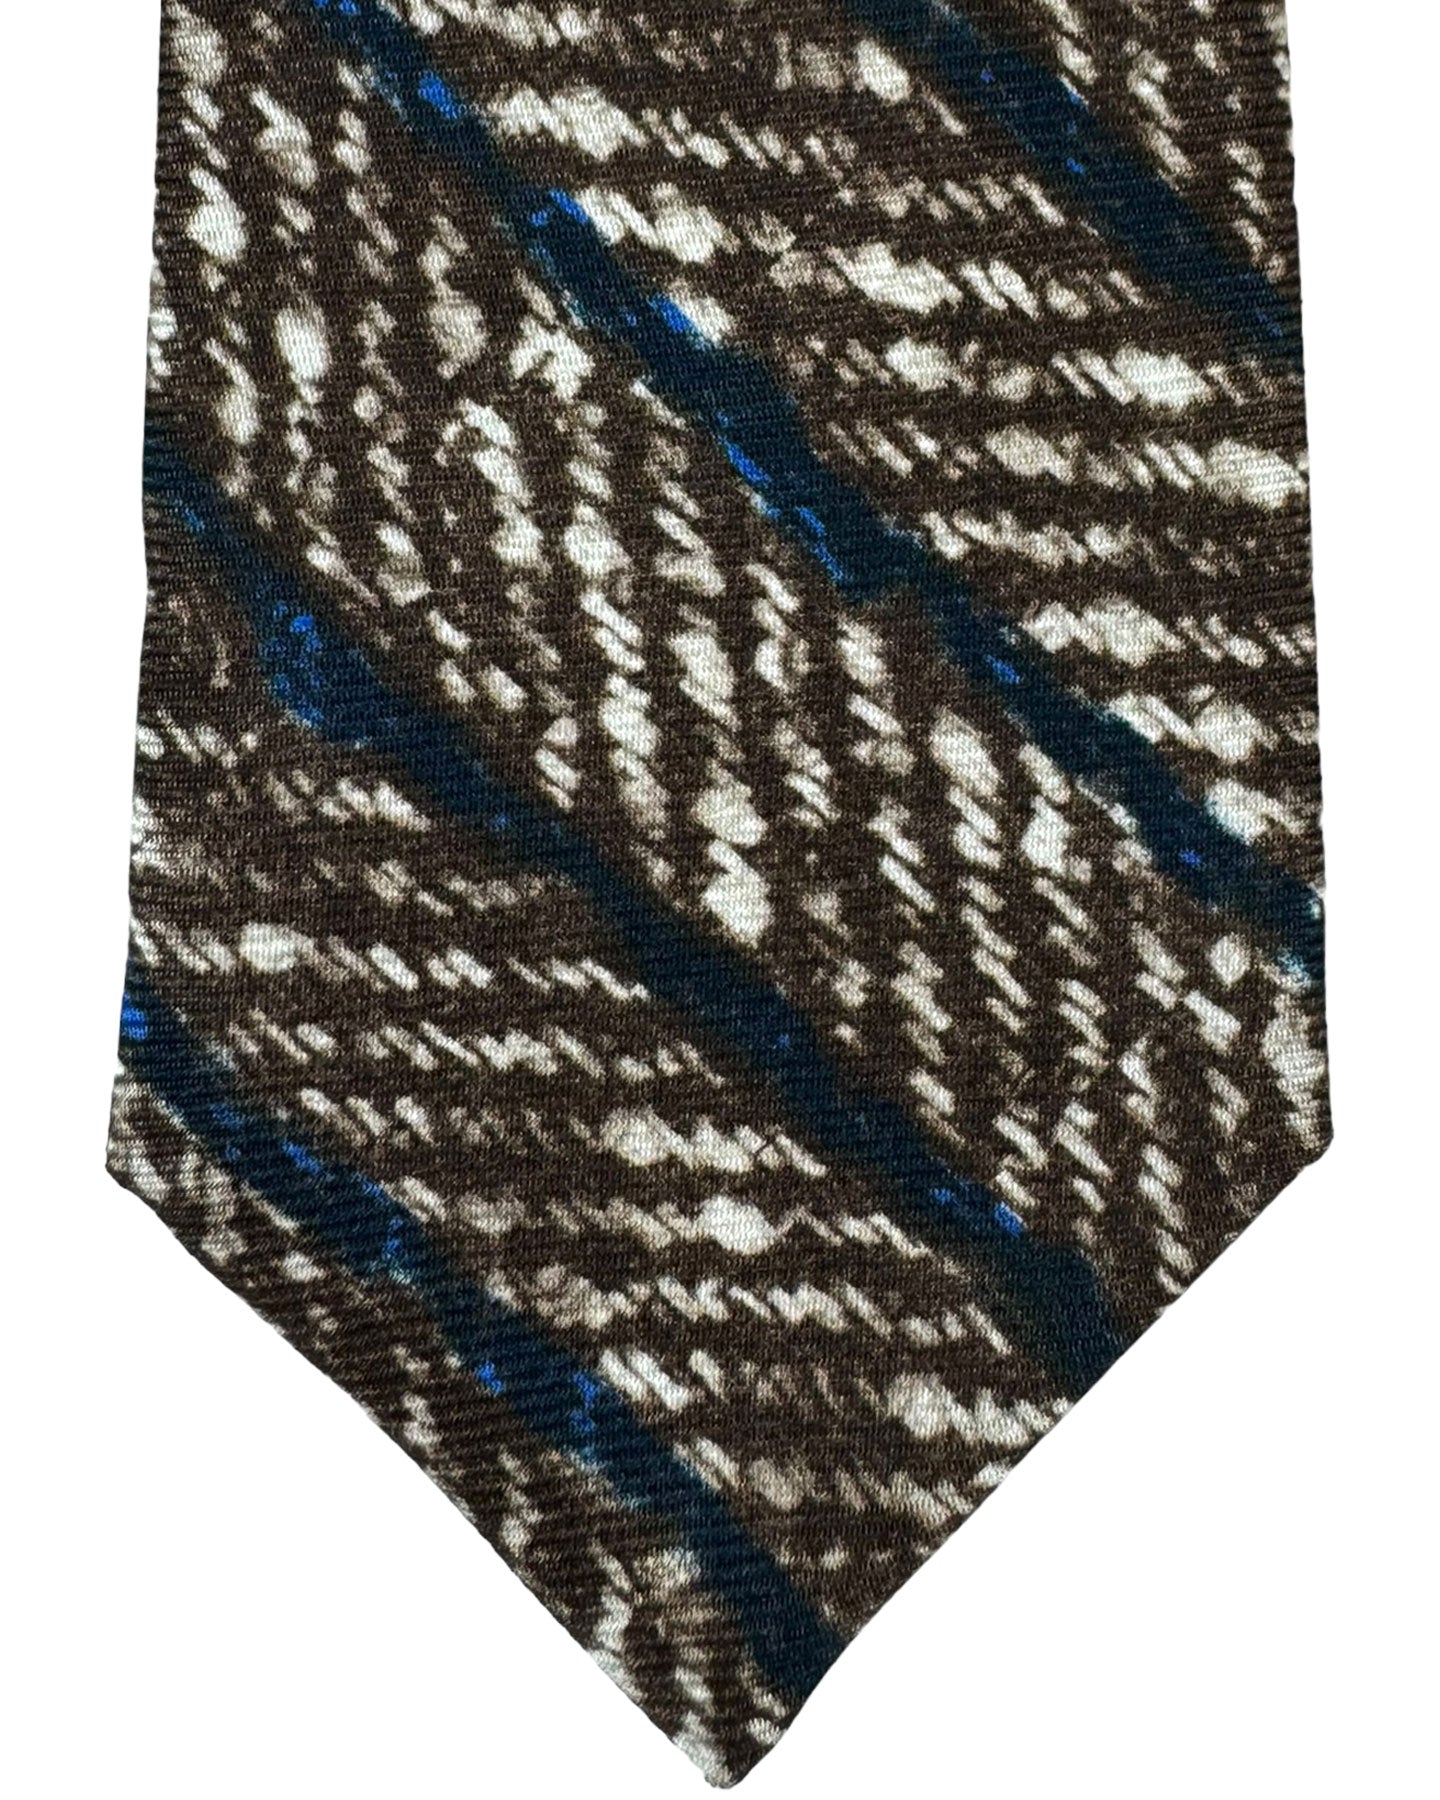 Kiton Silk Tie White Brown Dark Blue Herringbone Stripes Design - Sevenfold Necktie